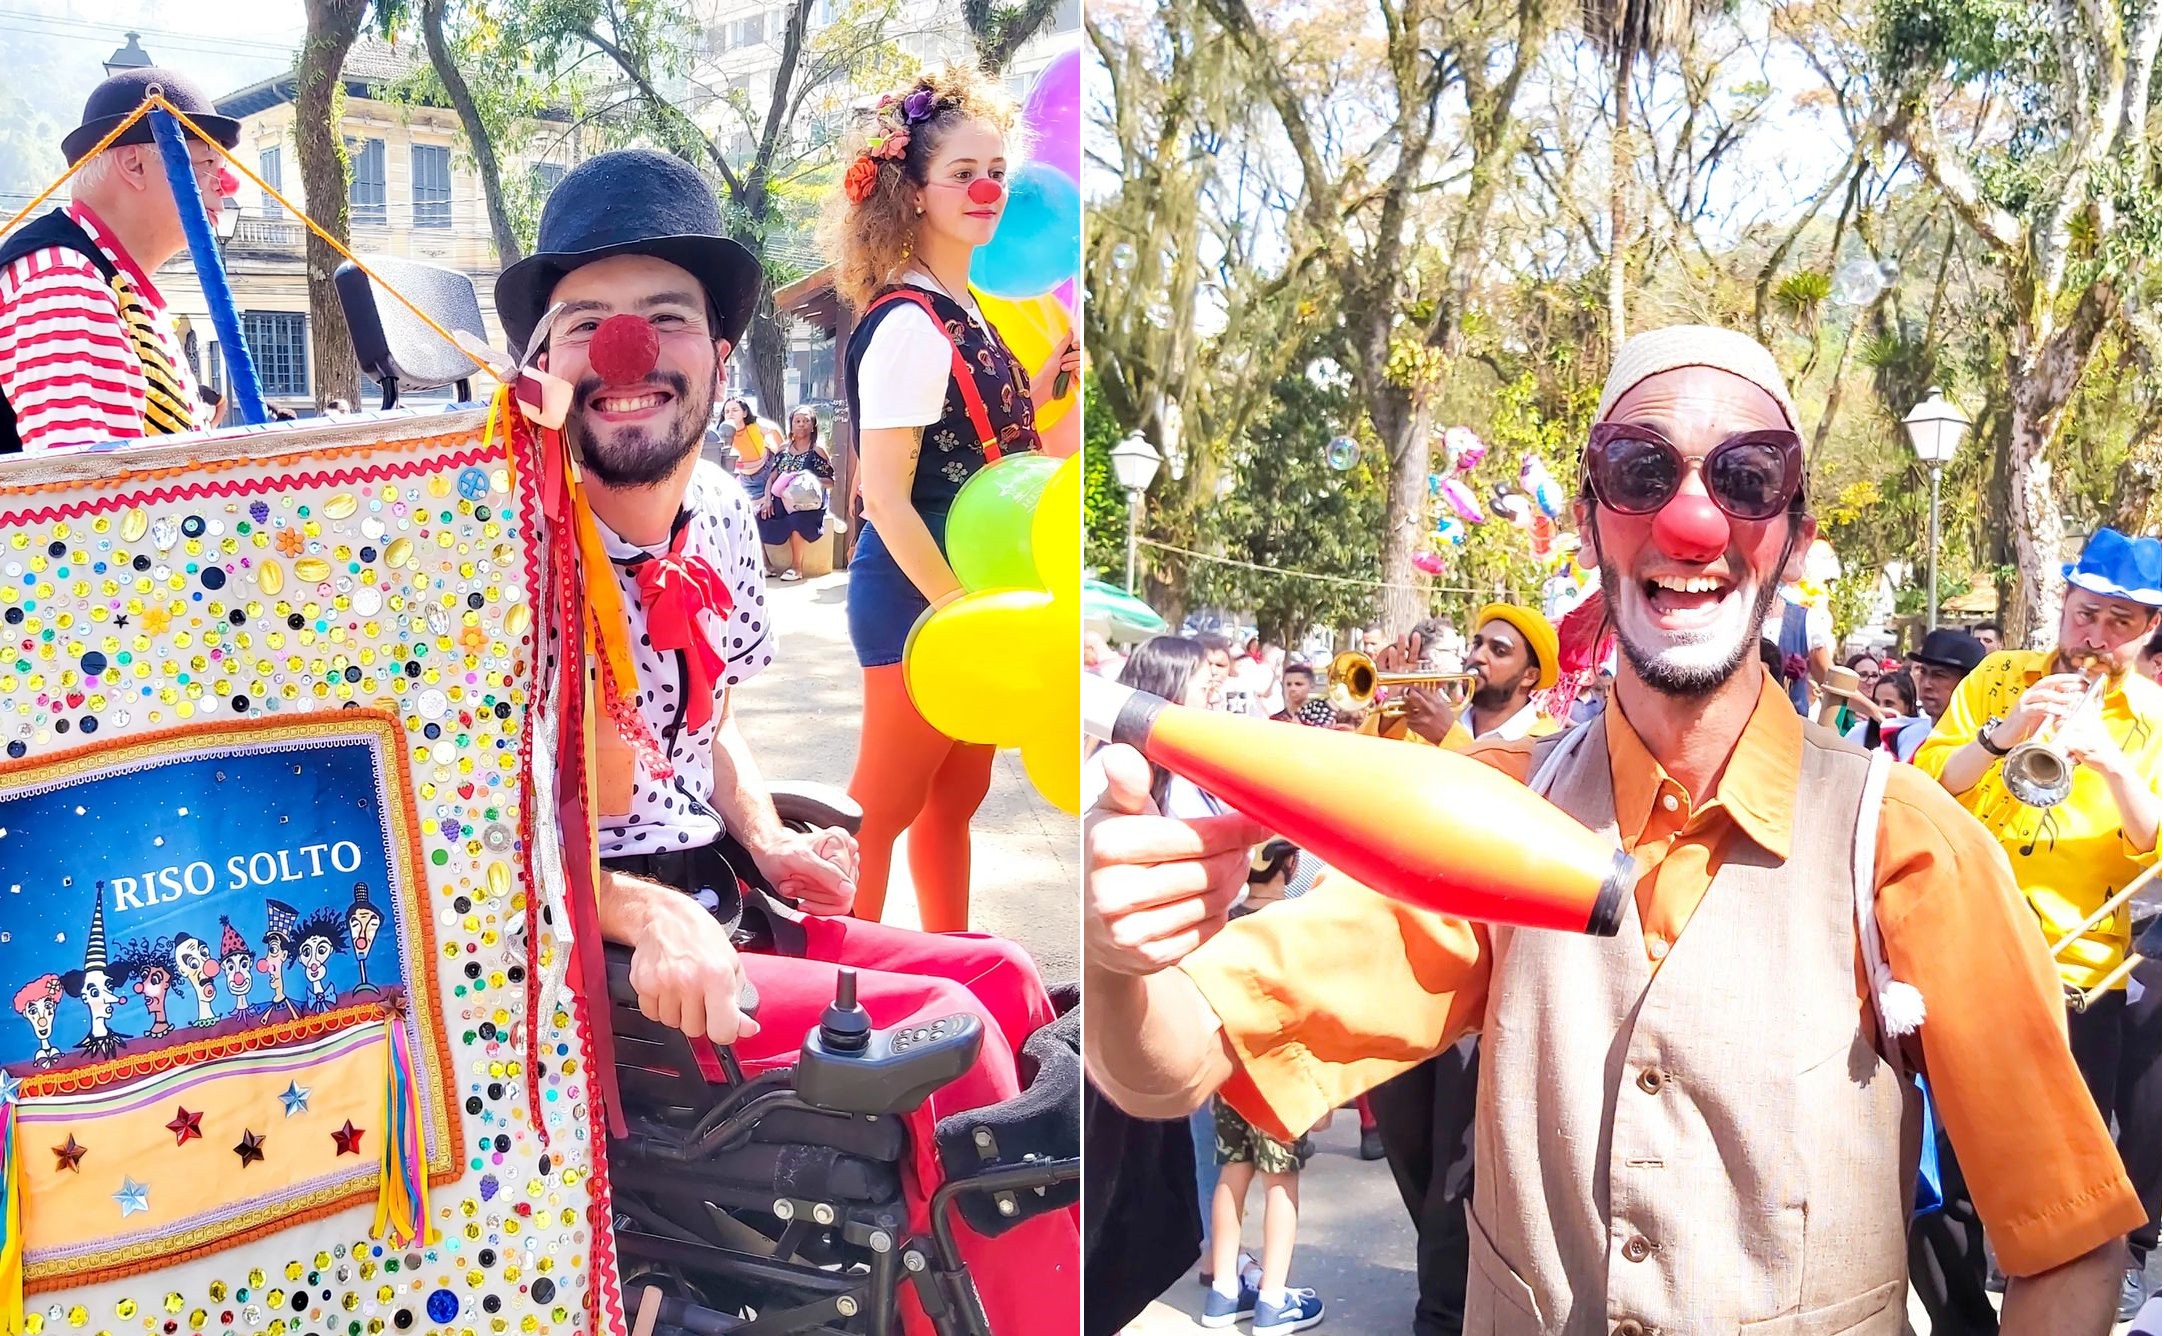 Festival Riso Solto oferece oficinas circenses, espetáculos e outras atividades gratuitas em Petrópolis